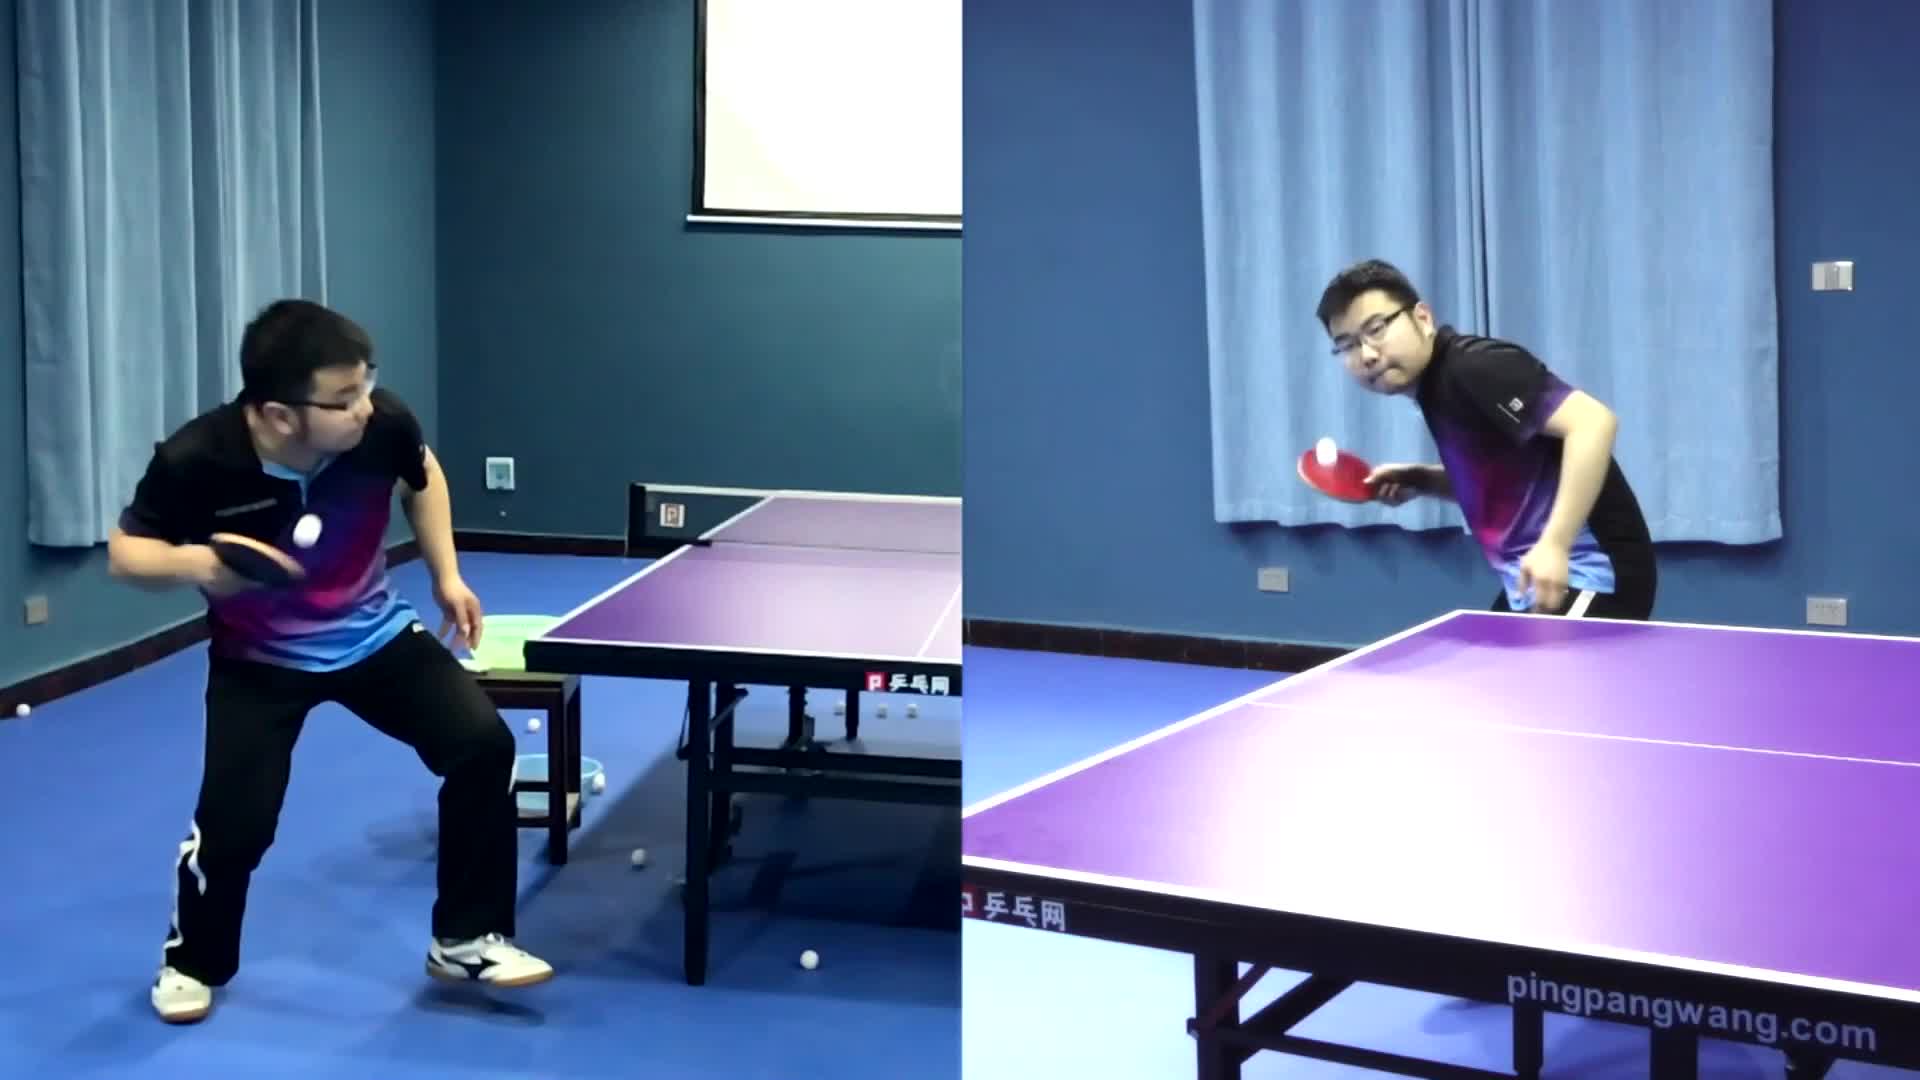 《乒乓球慢动作教学视频》第291集:湿父正手正手勾式发球左右手